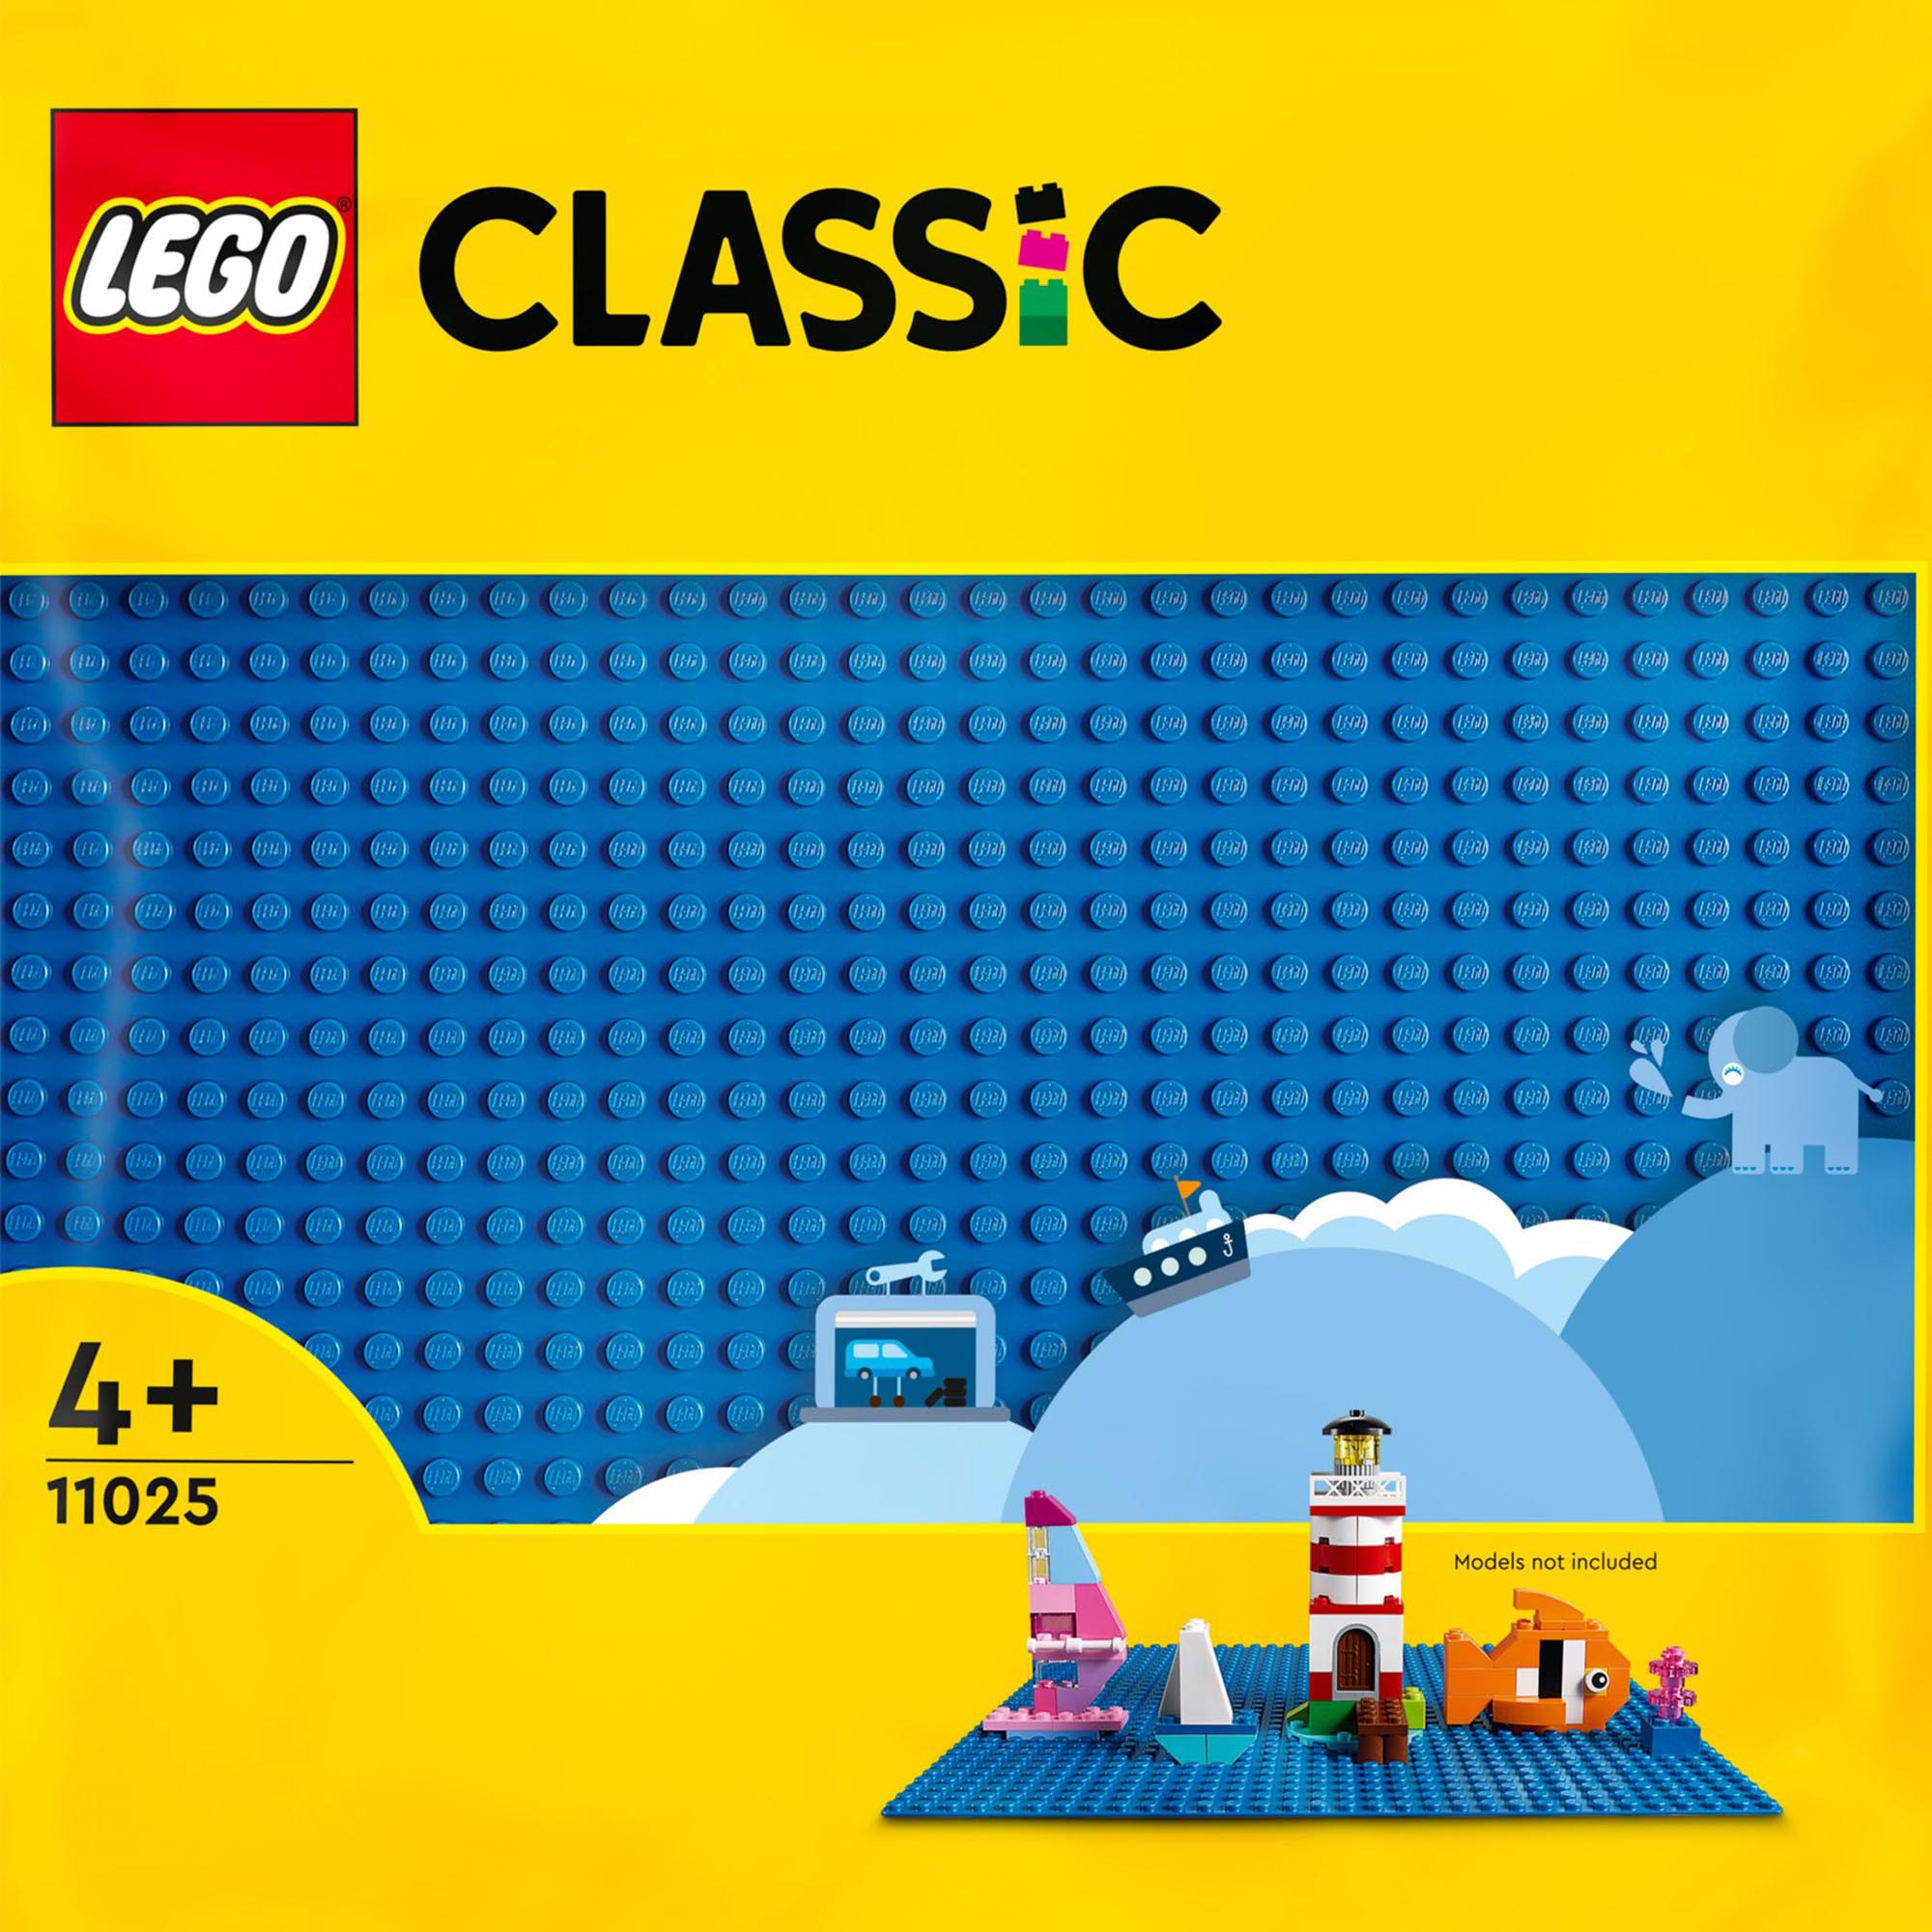 LEGO Classic Base Blu, Tavola per Costruzioni Quadrata con 32x32 Bottoncini, Pia 11025, , large